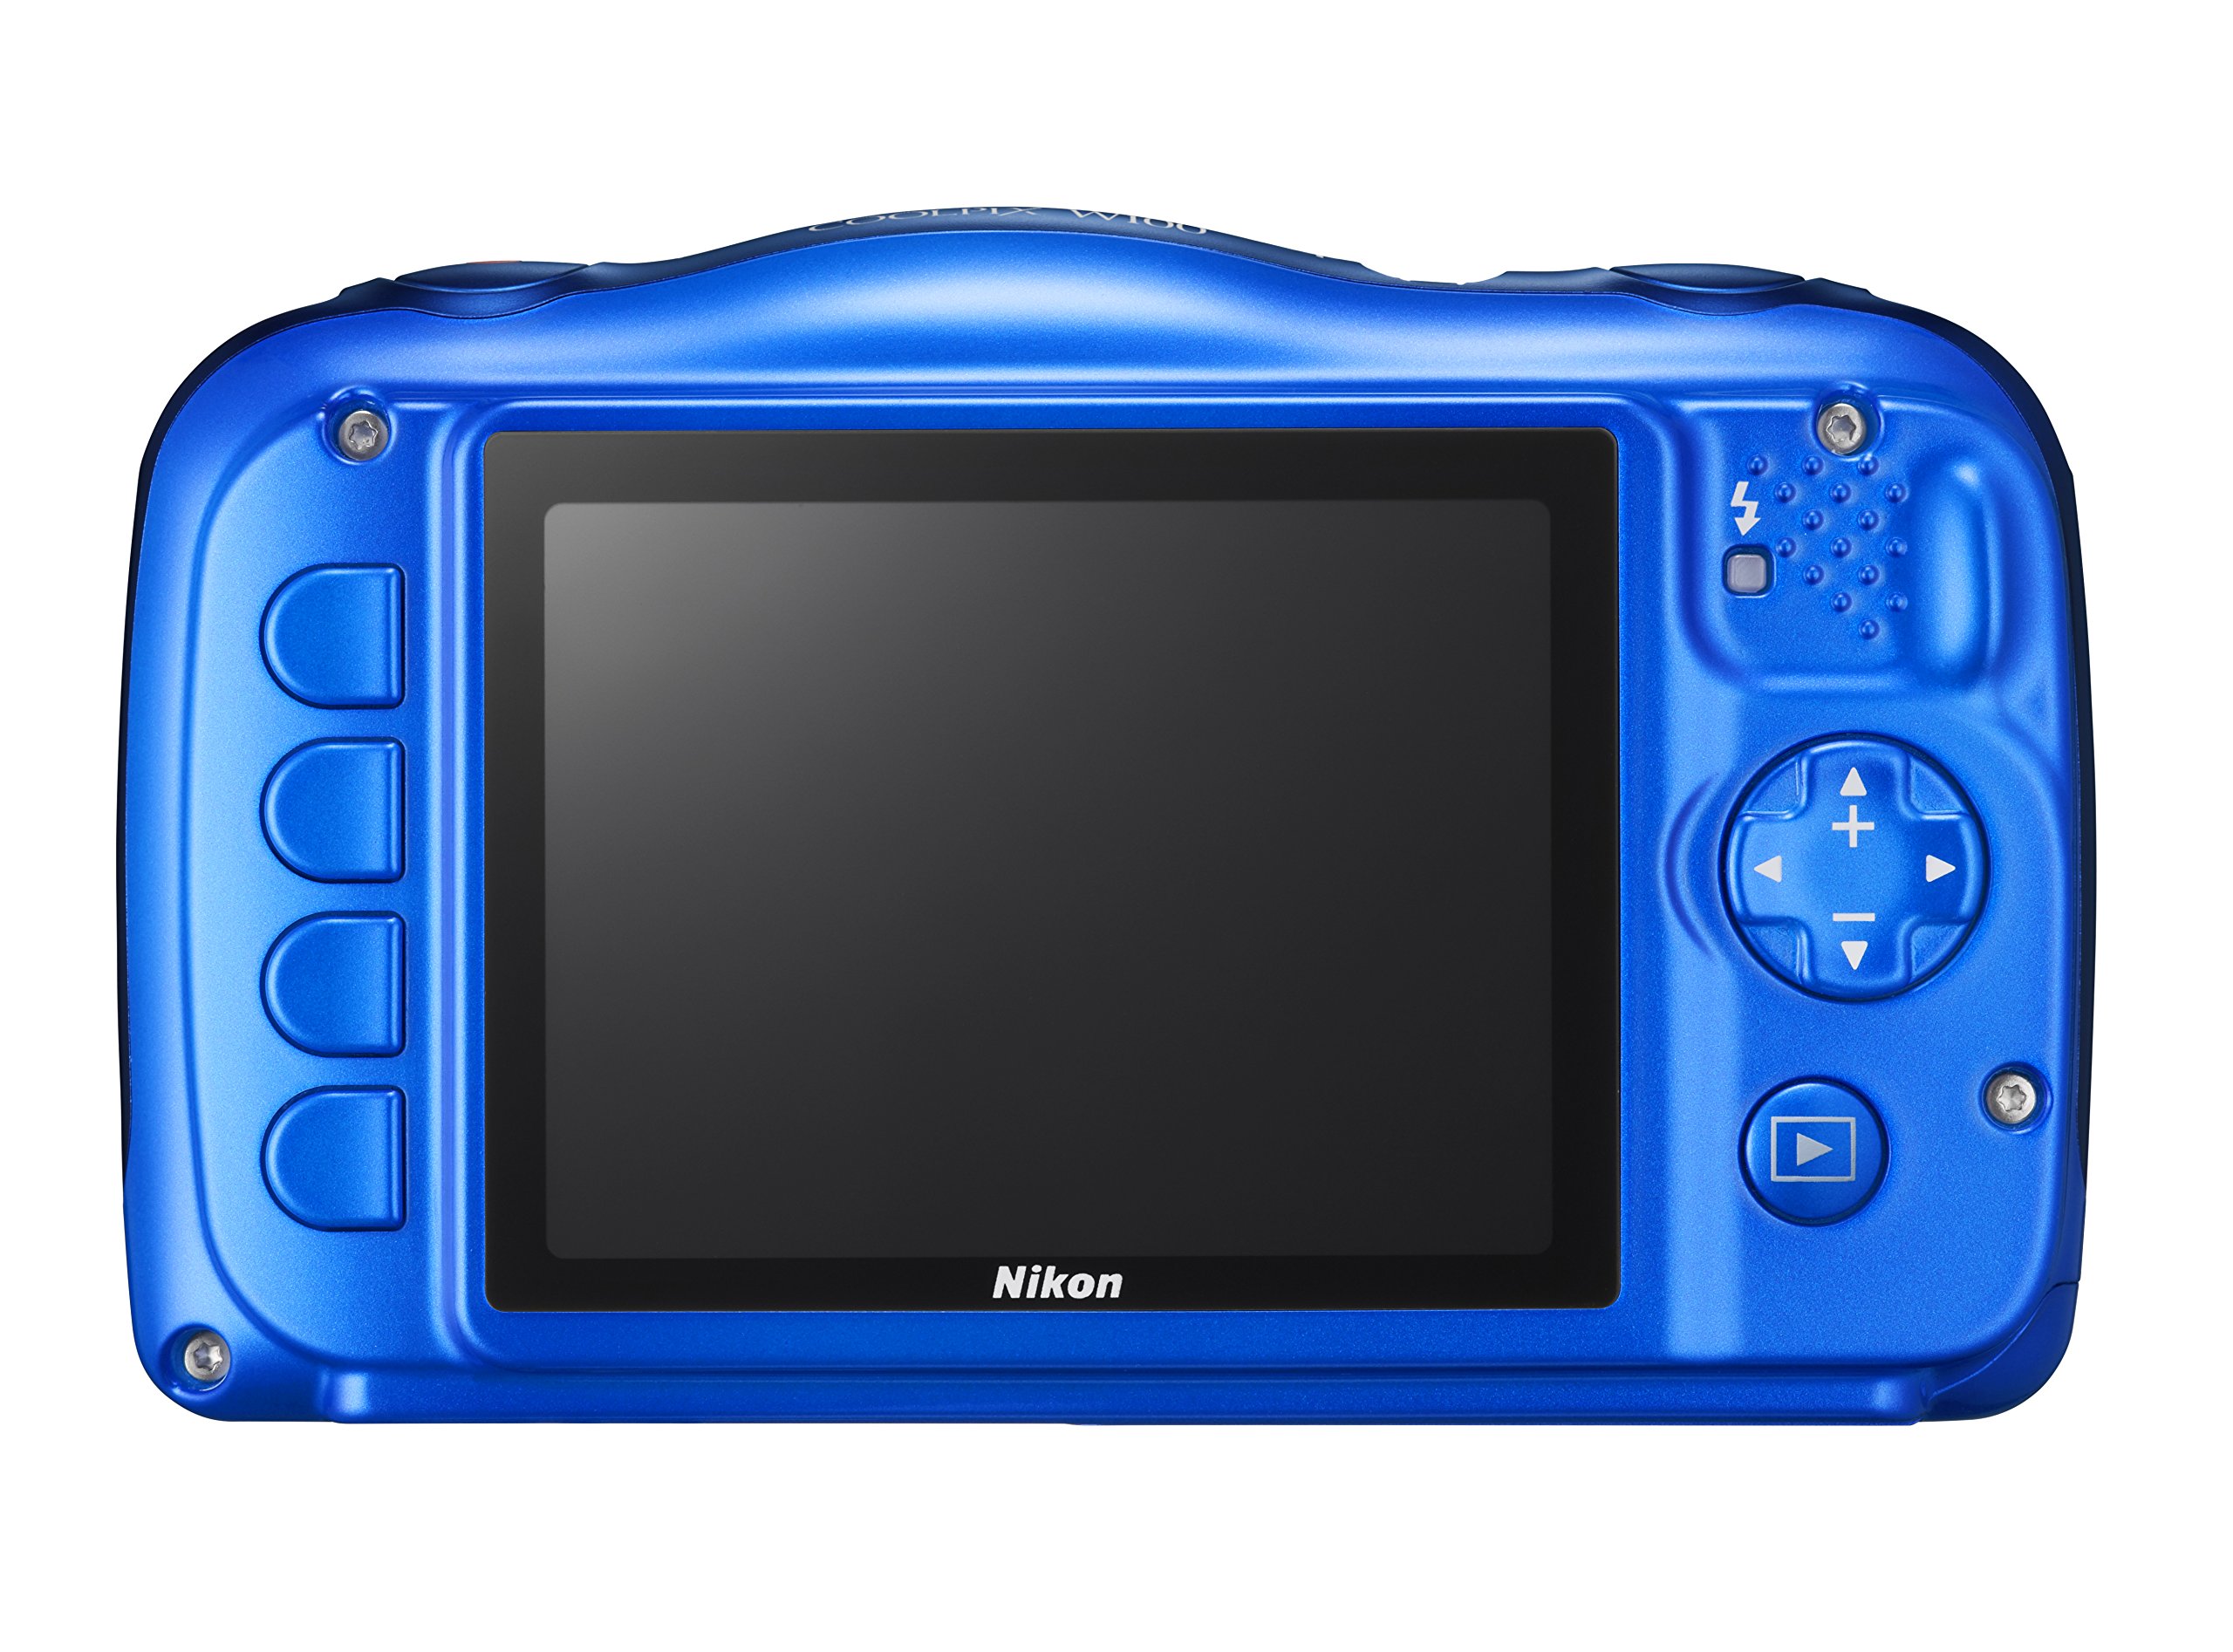 Nikon COOLPIX W100 (Blue)